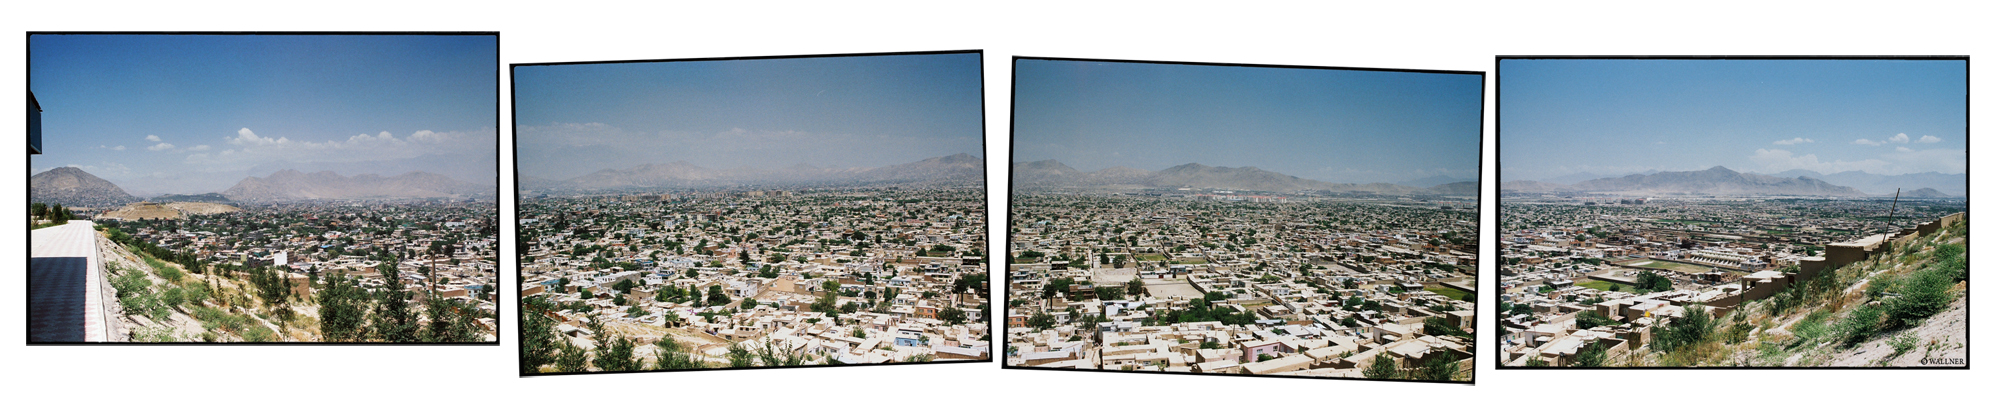 35mmPatrikWallner_Kabul_PanoramaLOWQ2000P